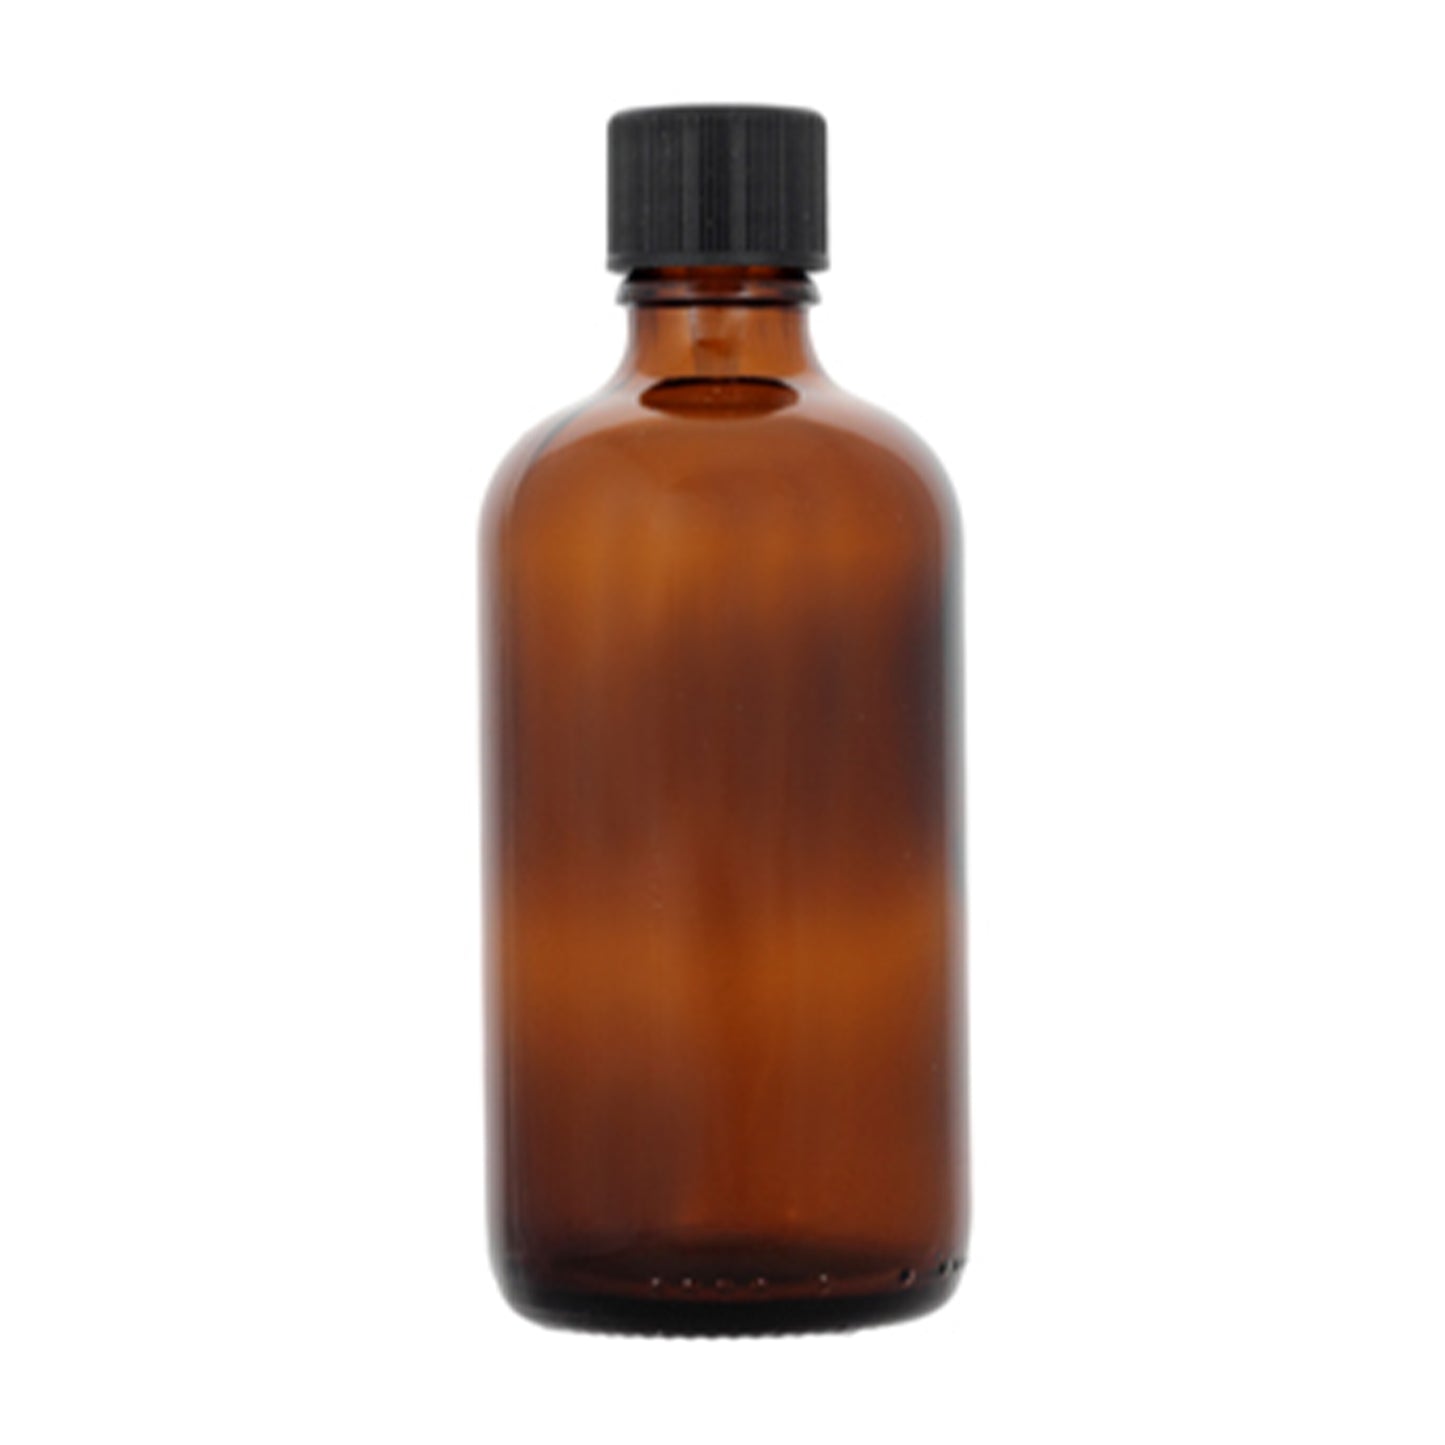 Lakpura Ceylon Cinnamon Leaf Oil